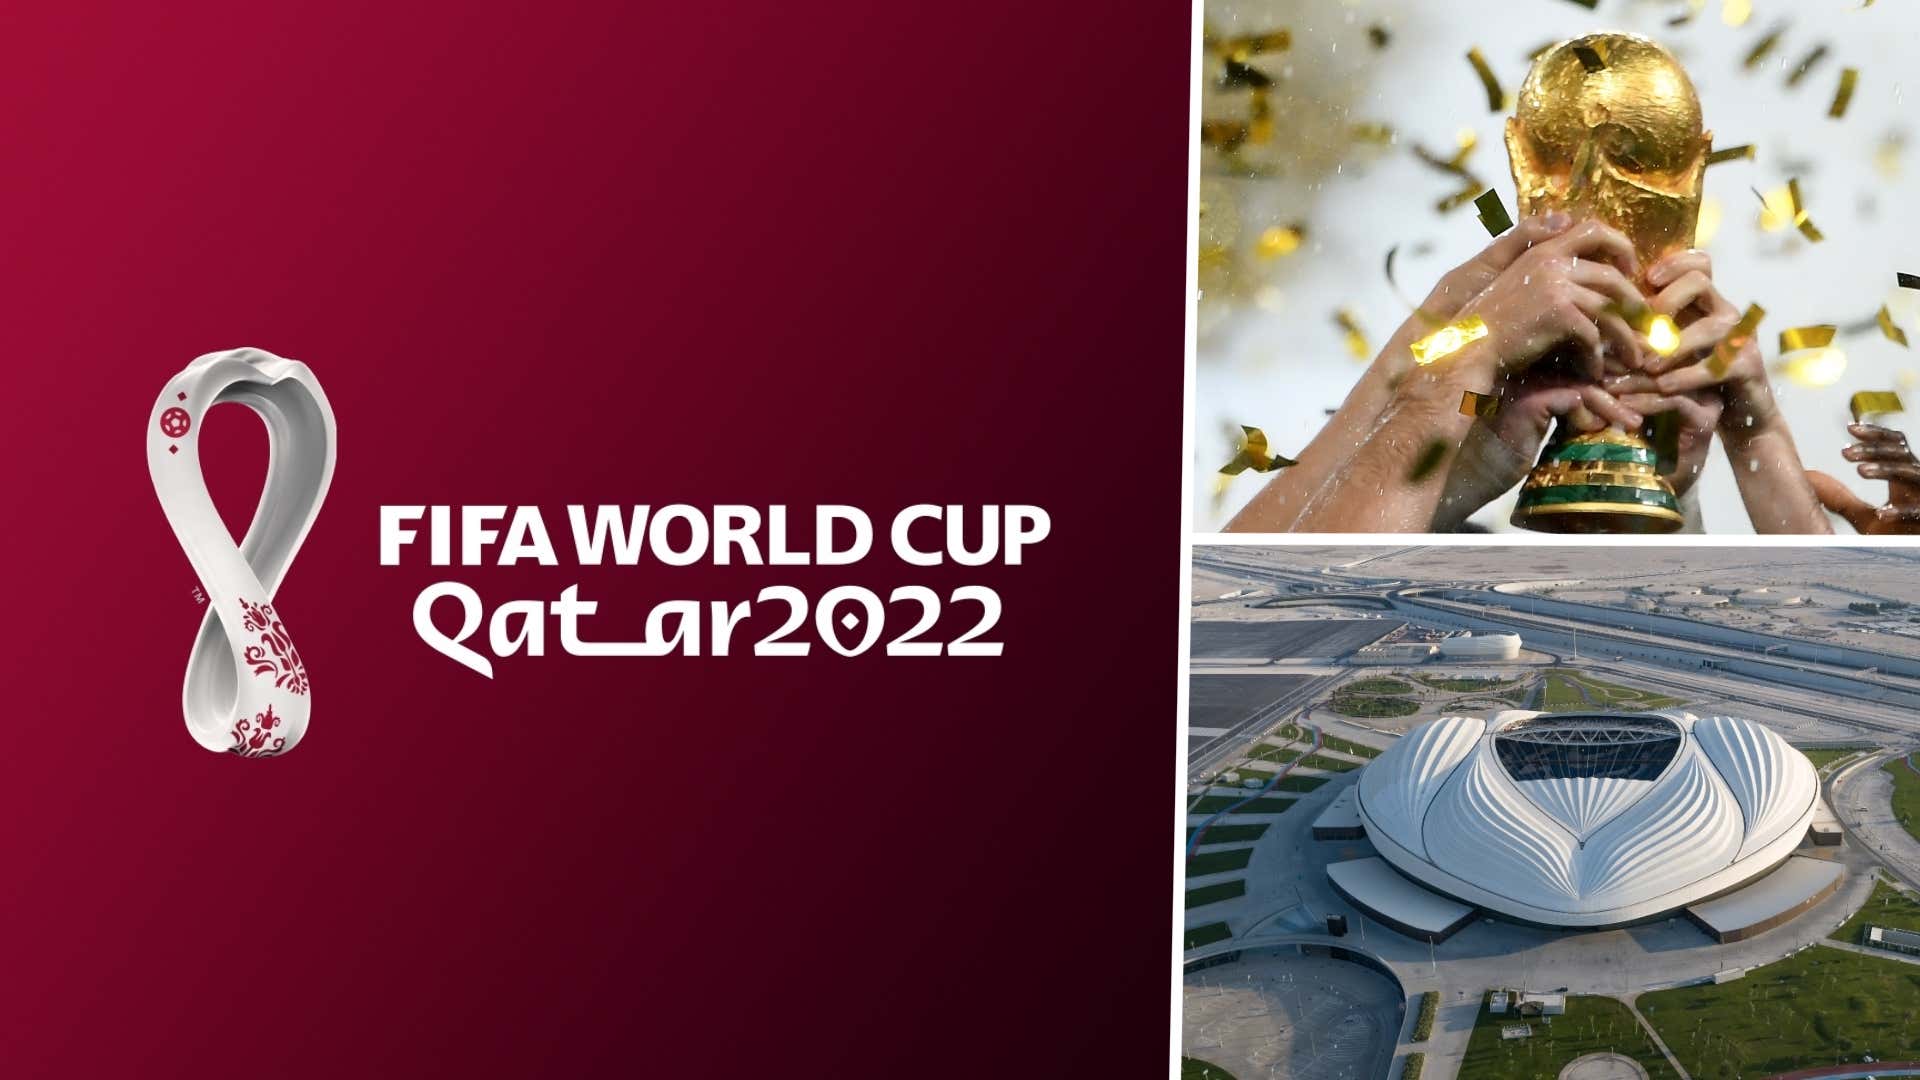 World Cup 2022,Qatar finals,qatar 2022,harbouchanews